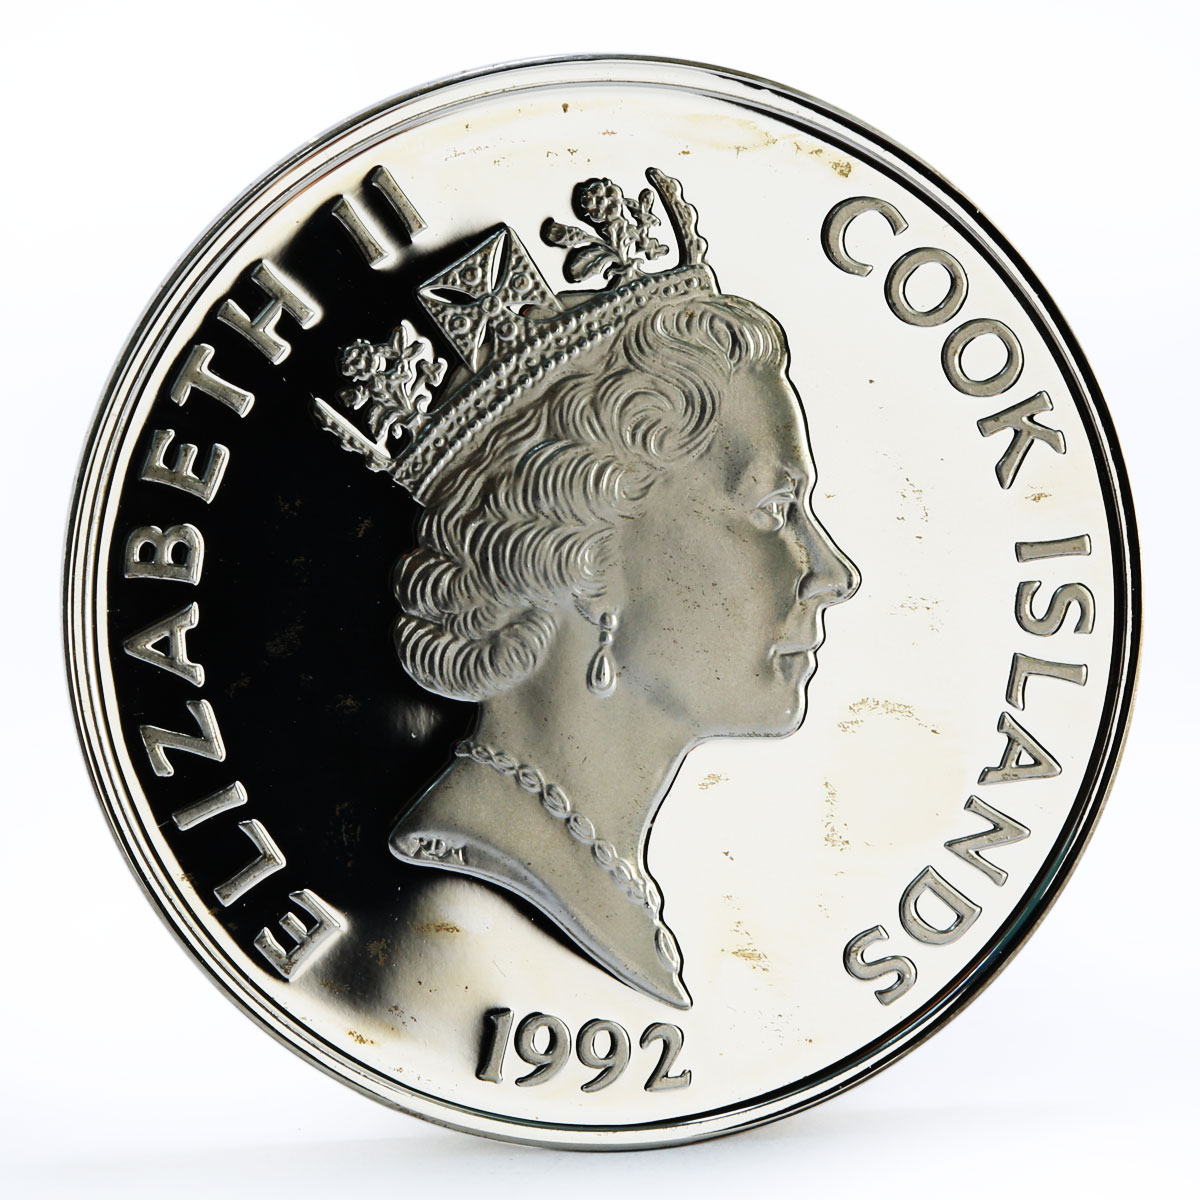 Cook Islands 50 dollars Explorer Giovanni da Verrazano Ship silver coin 1992